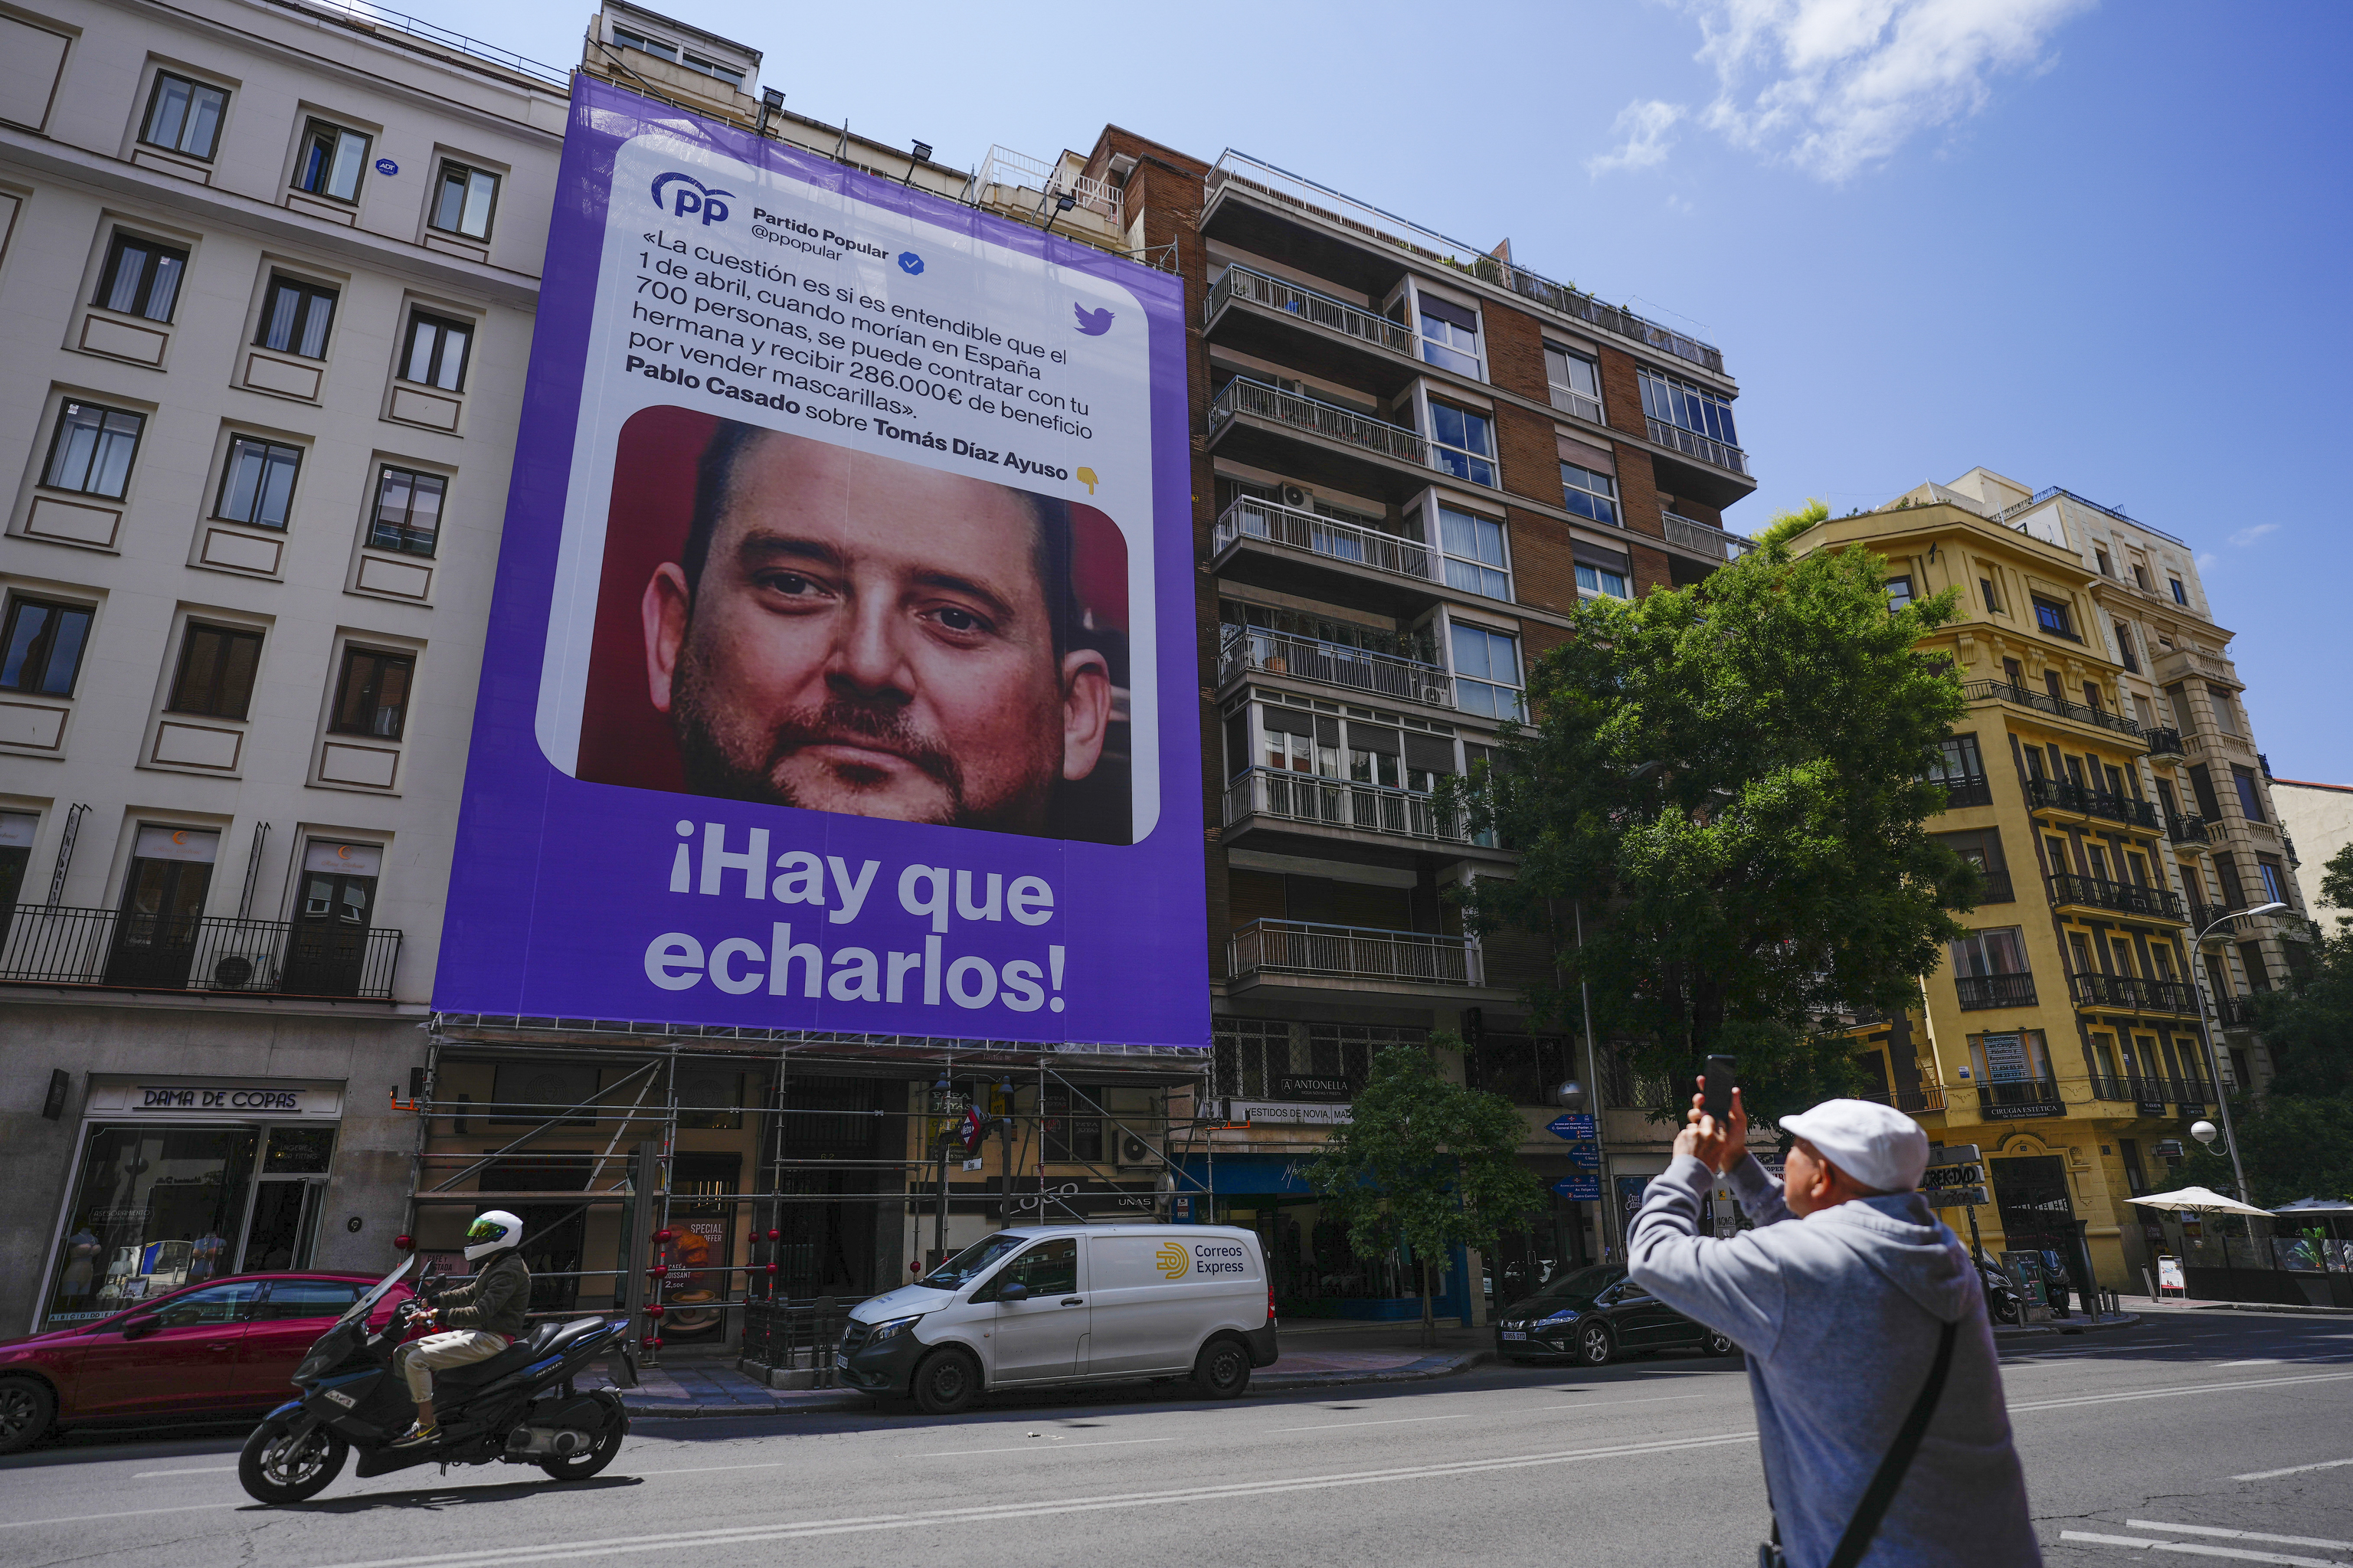 Inaceptable sealamiento de Podemos al hermano de Ayuso